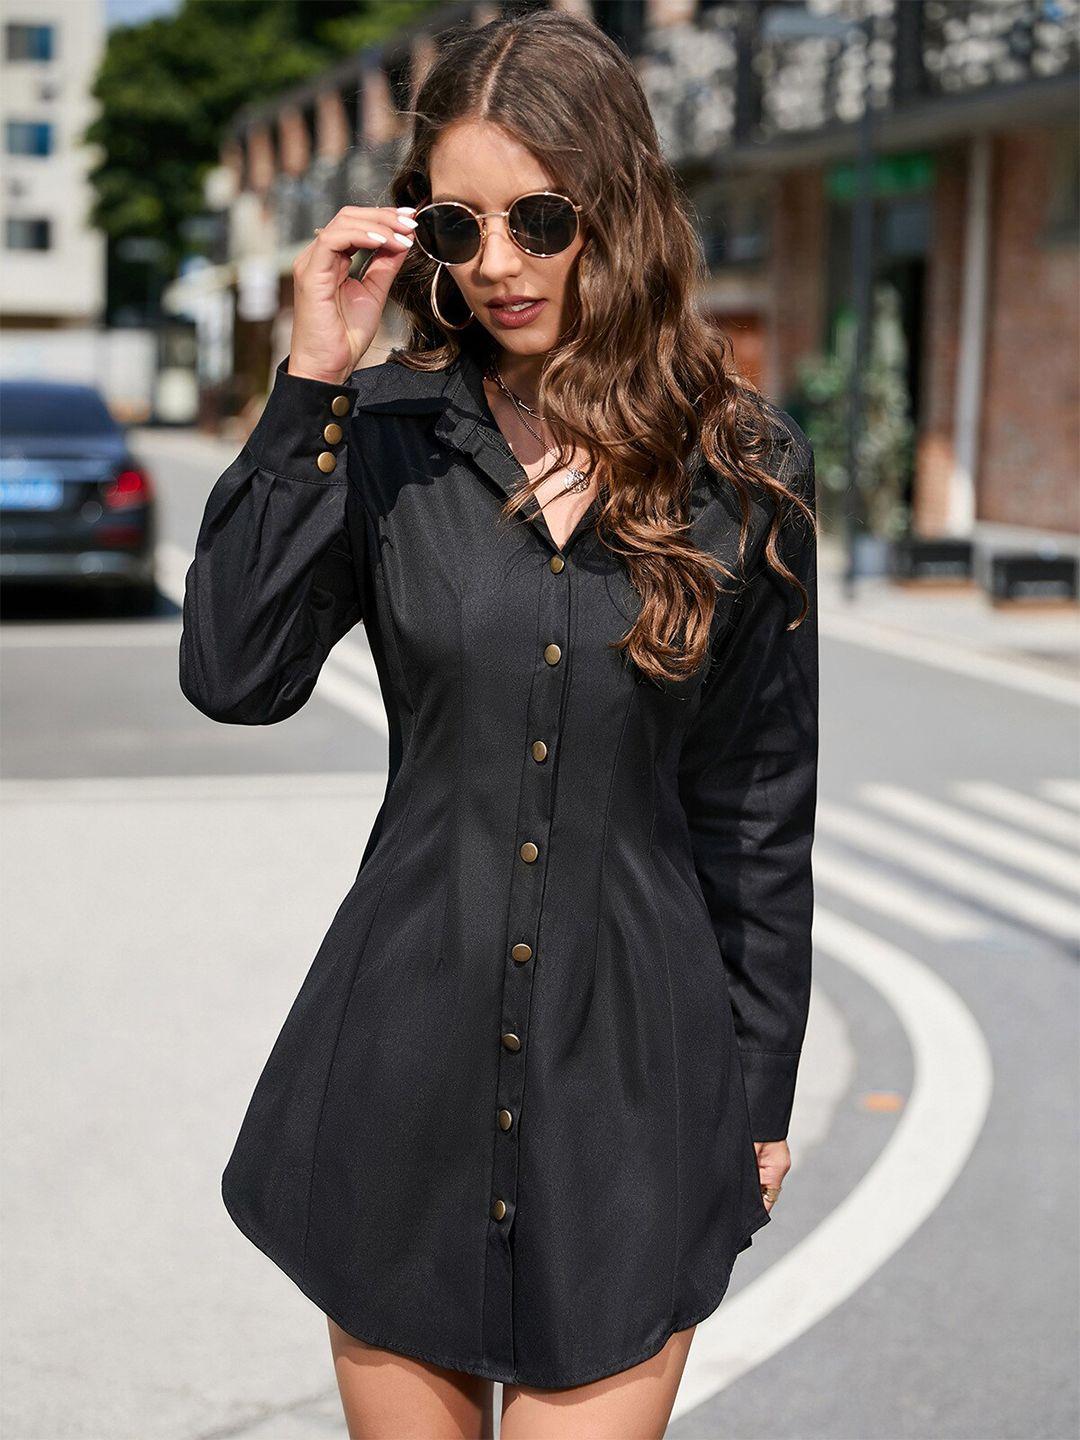 stylecast black shirt collar shirt dress